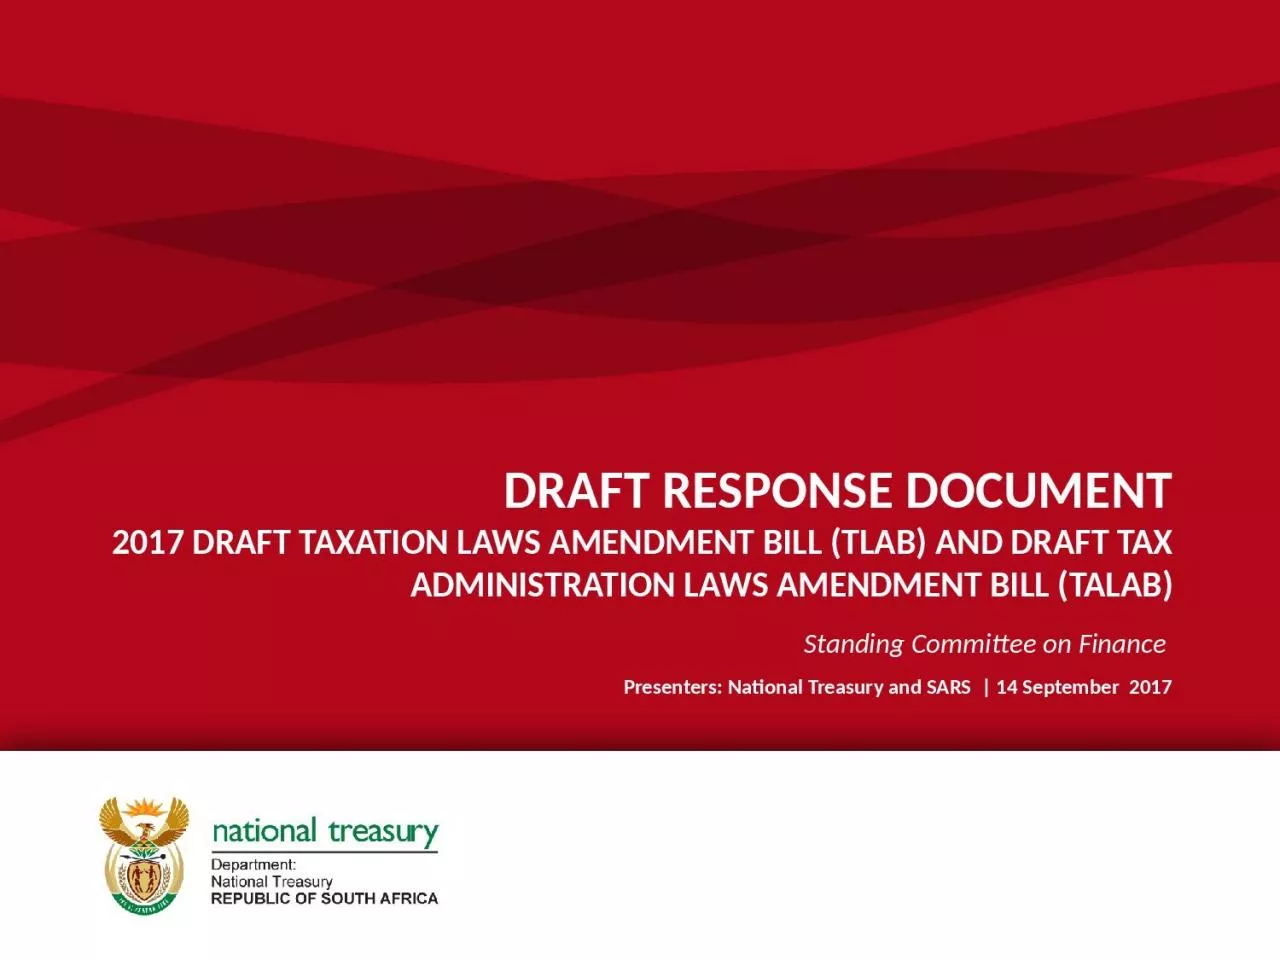 DRAFT RESPONSE DOCUMENT 2017 DRAFT TAXATION LAWS AMENDMENT BILL (TLAB) AND DRAFT TAX ADMINISTRATION